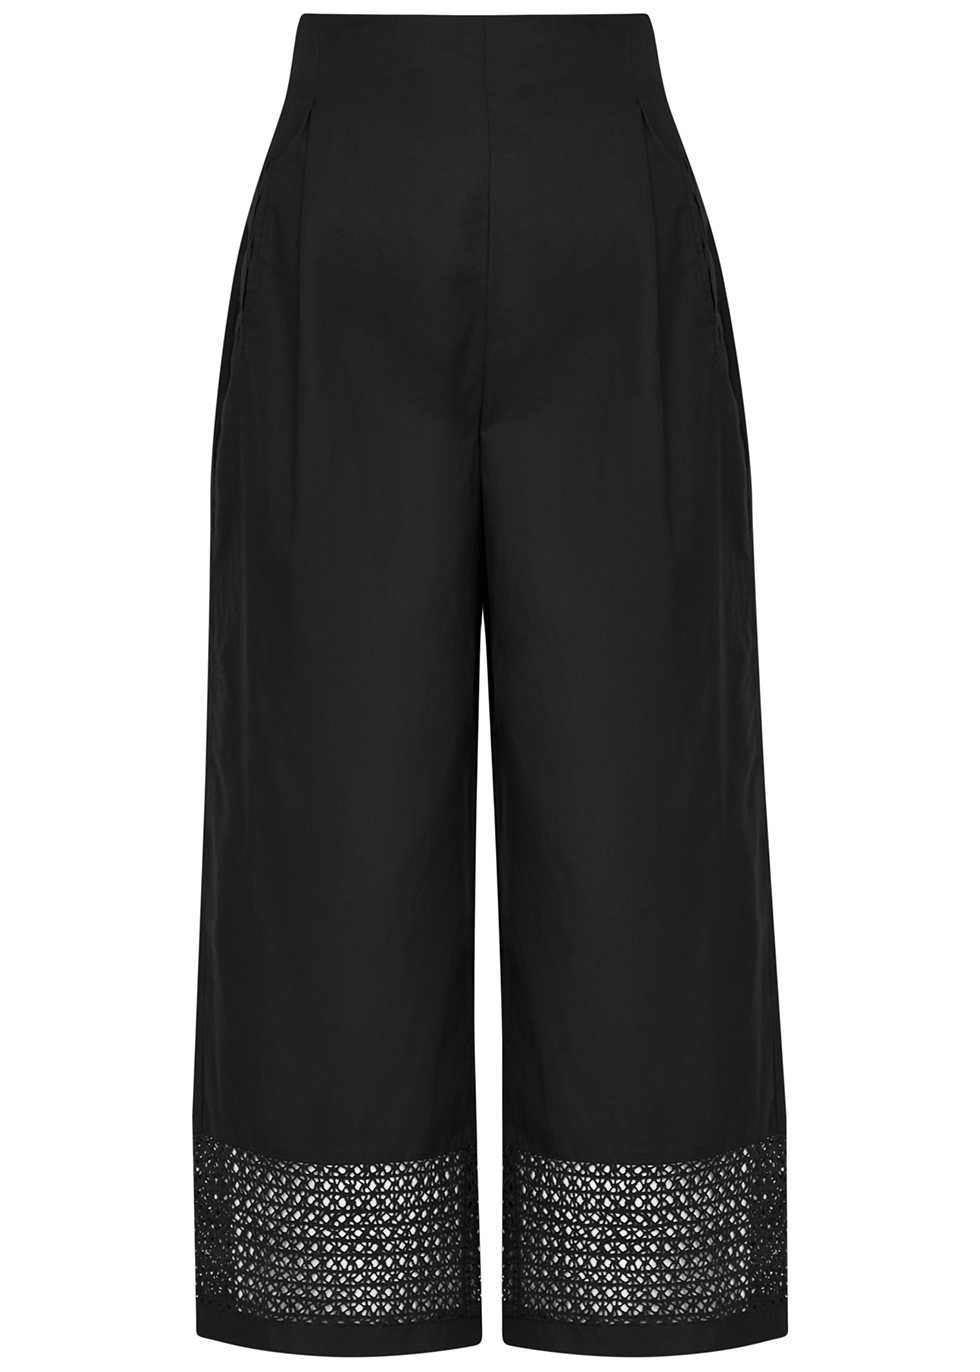 MERLETTE Leon black cotton trousers - Harvey Nichols